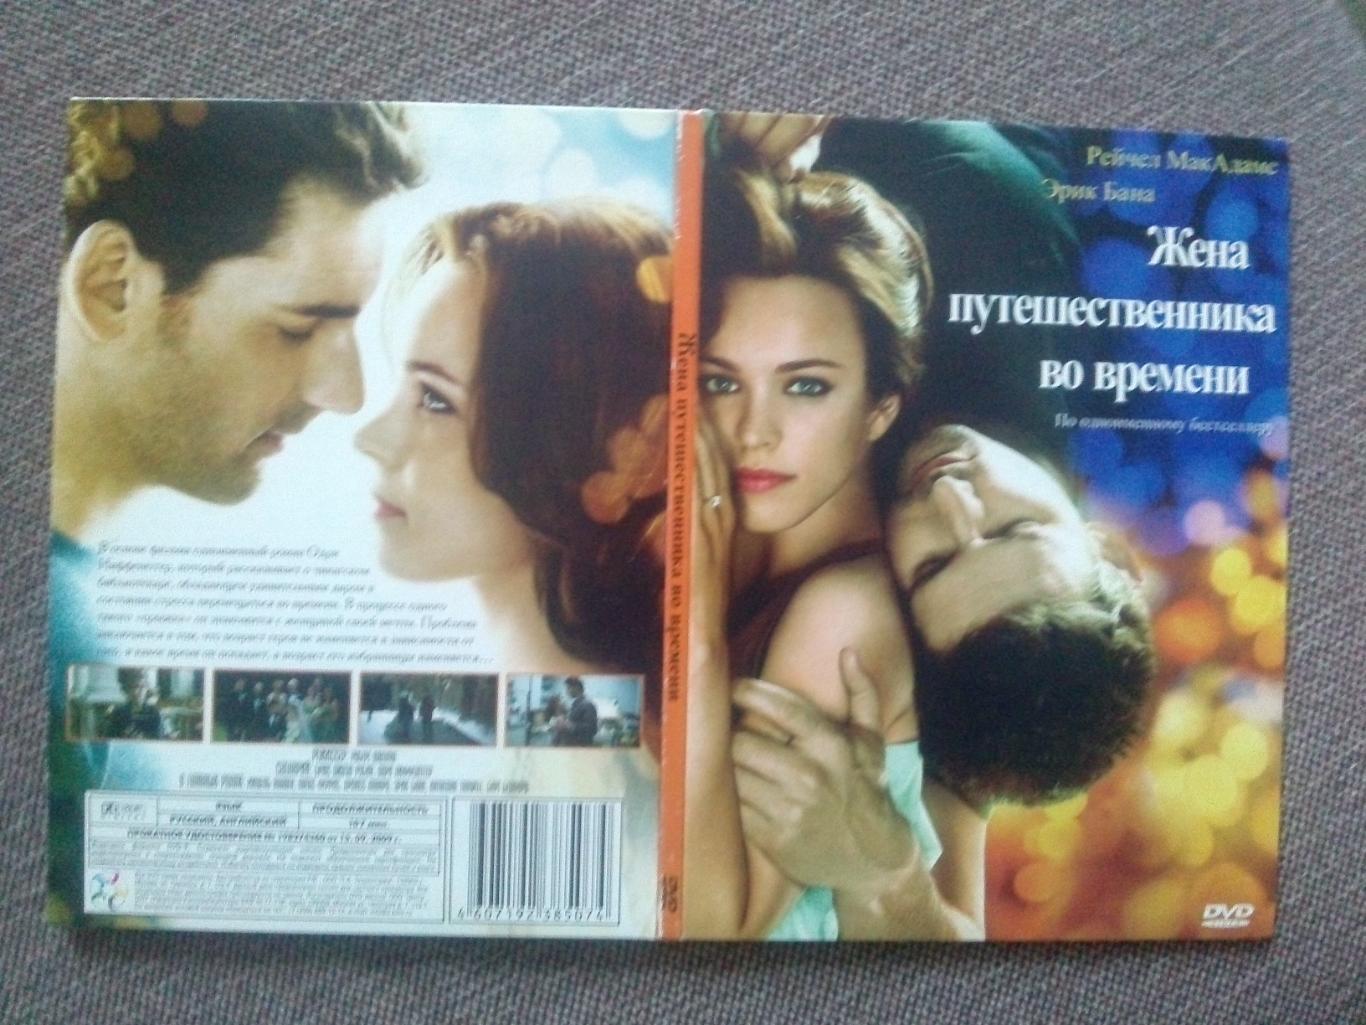 DVD диск : фильм Жена путешественника во времени 2009 г. США (лицензия) 4